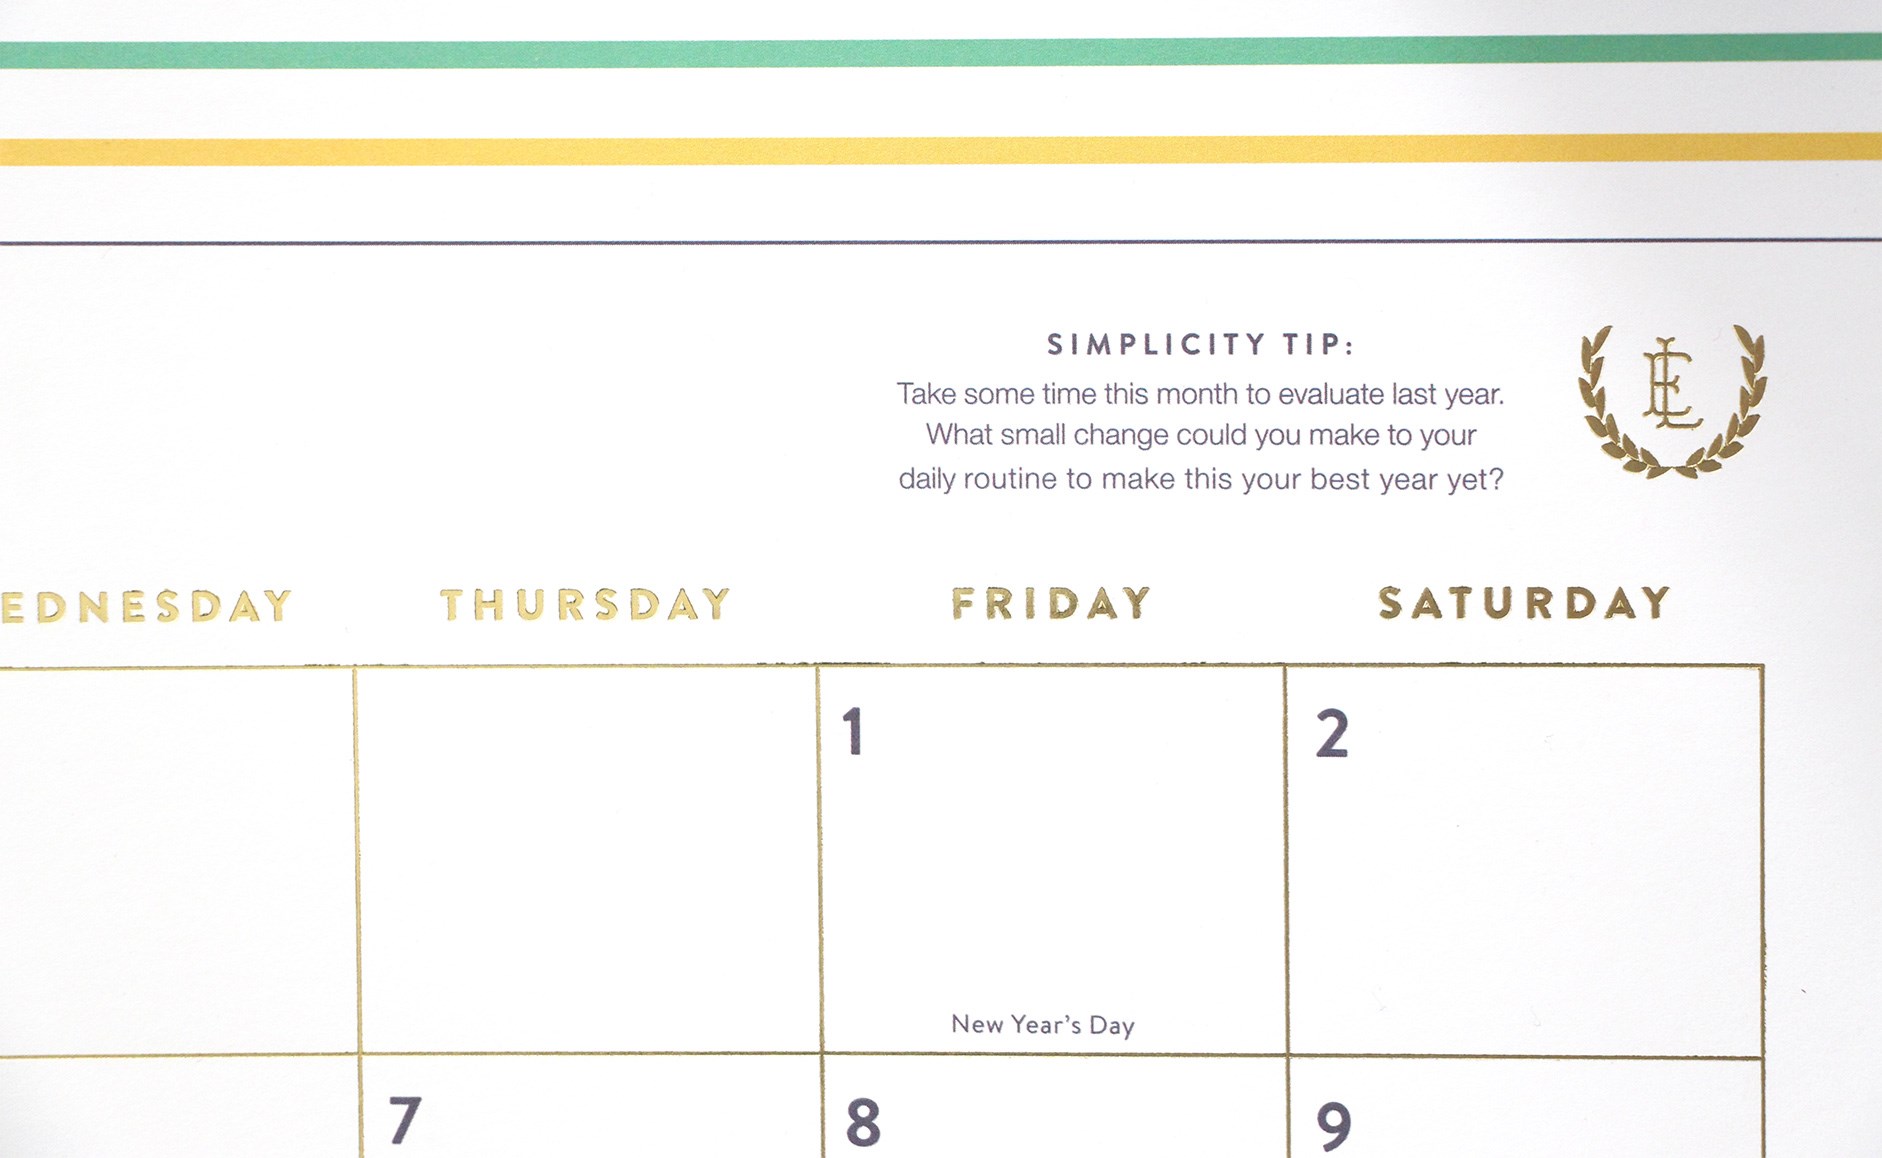 Emily Ley Simplified calendar focuses on positive